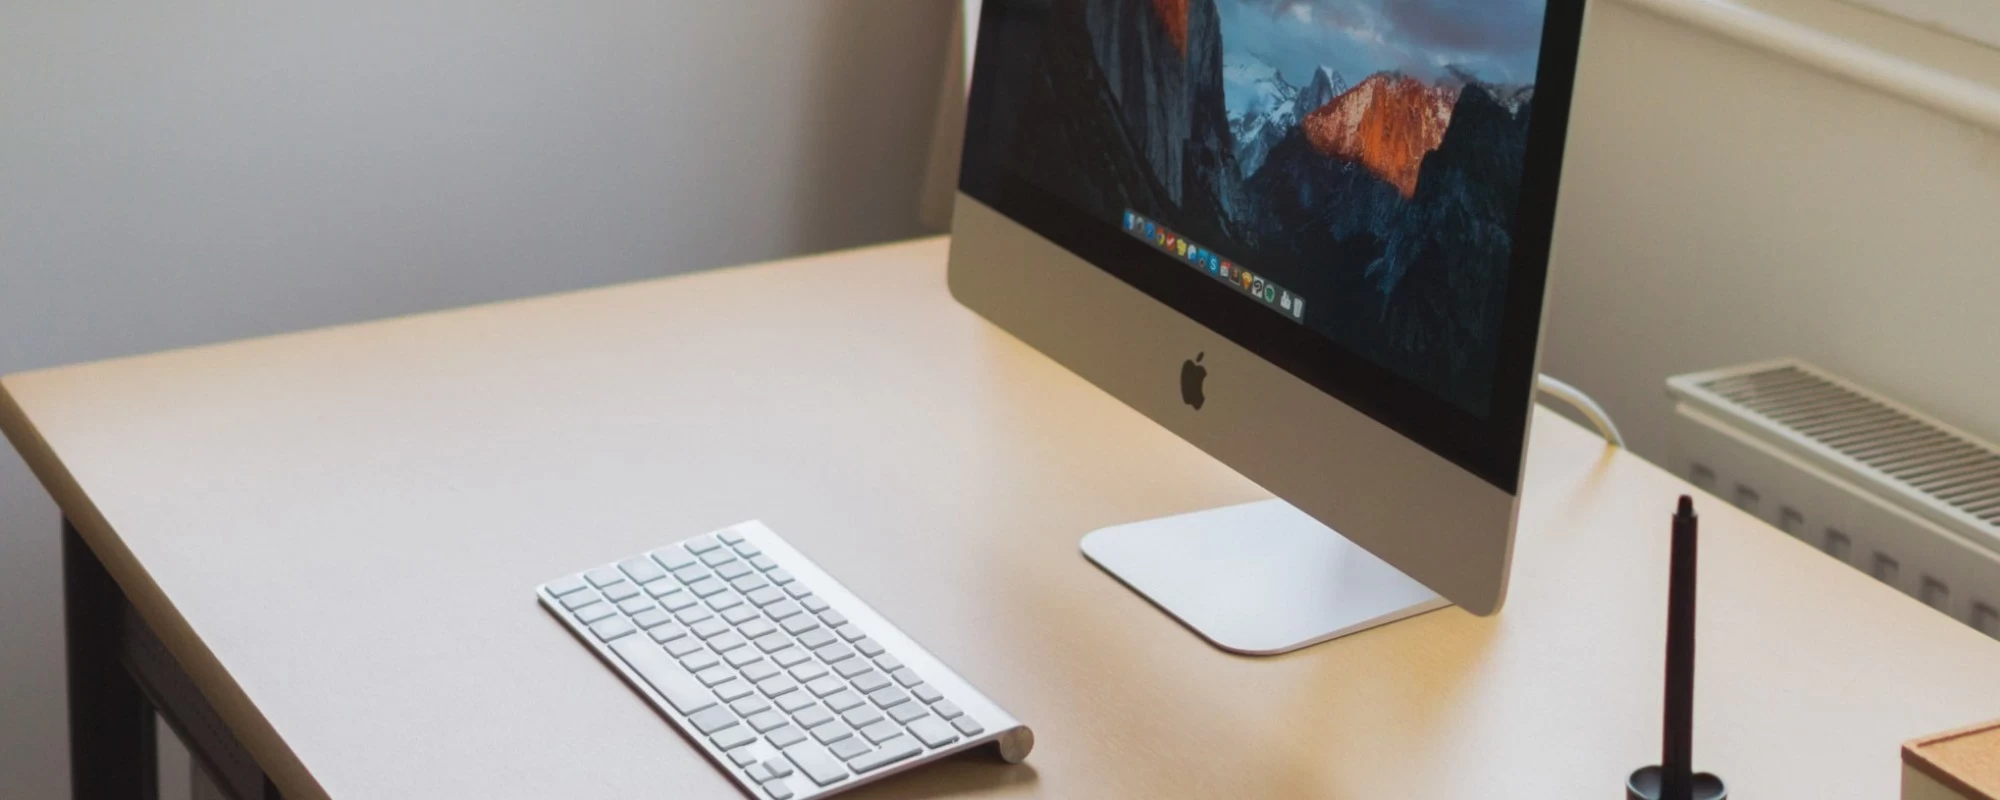 Ein Apple Mac steht auf einem Schreibtisch mit einer Tastatur | SPIRIT/21